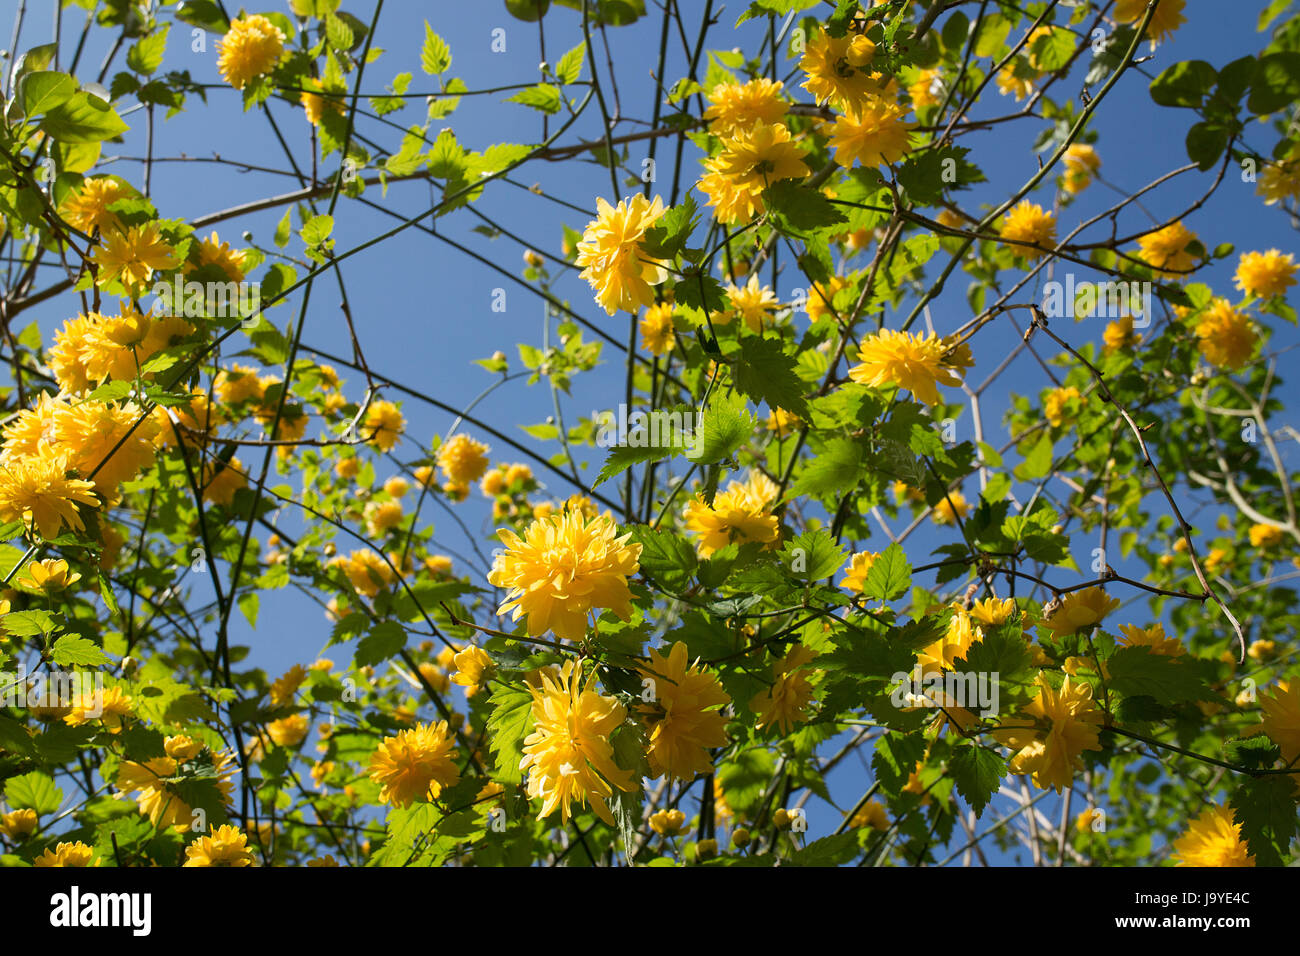 Kerria Japonica Pleniflora 'Batchelors Button' against blue sky Stock Photo